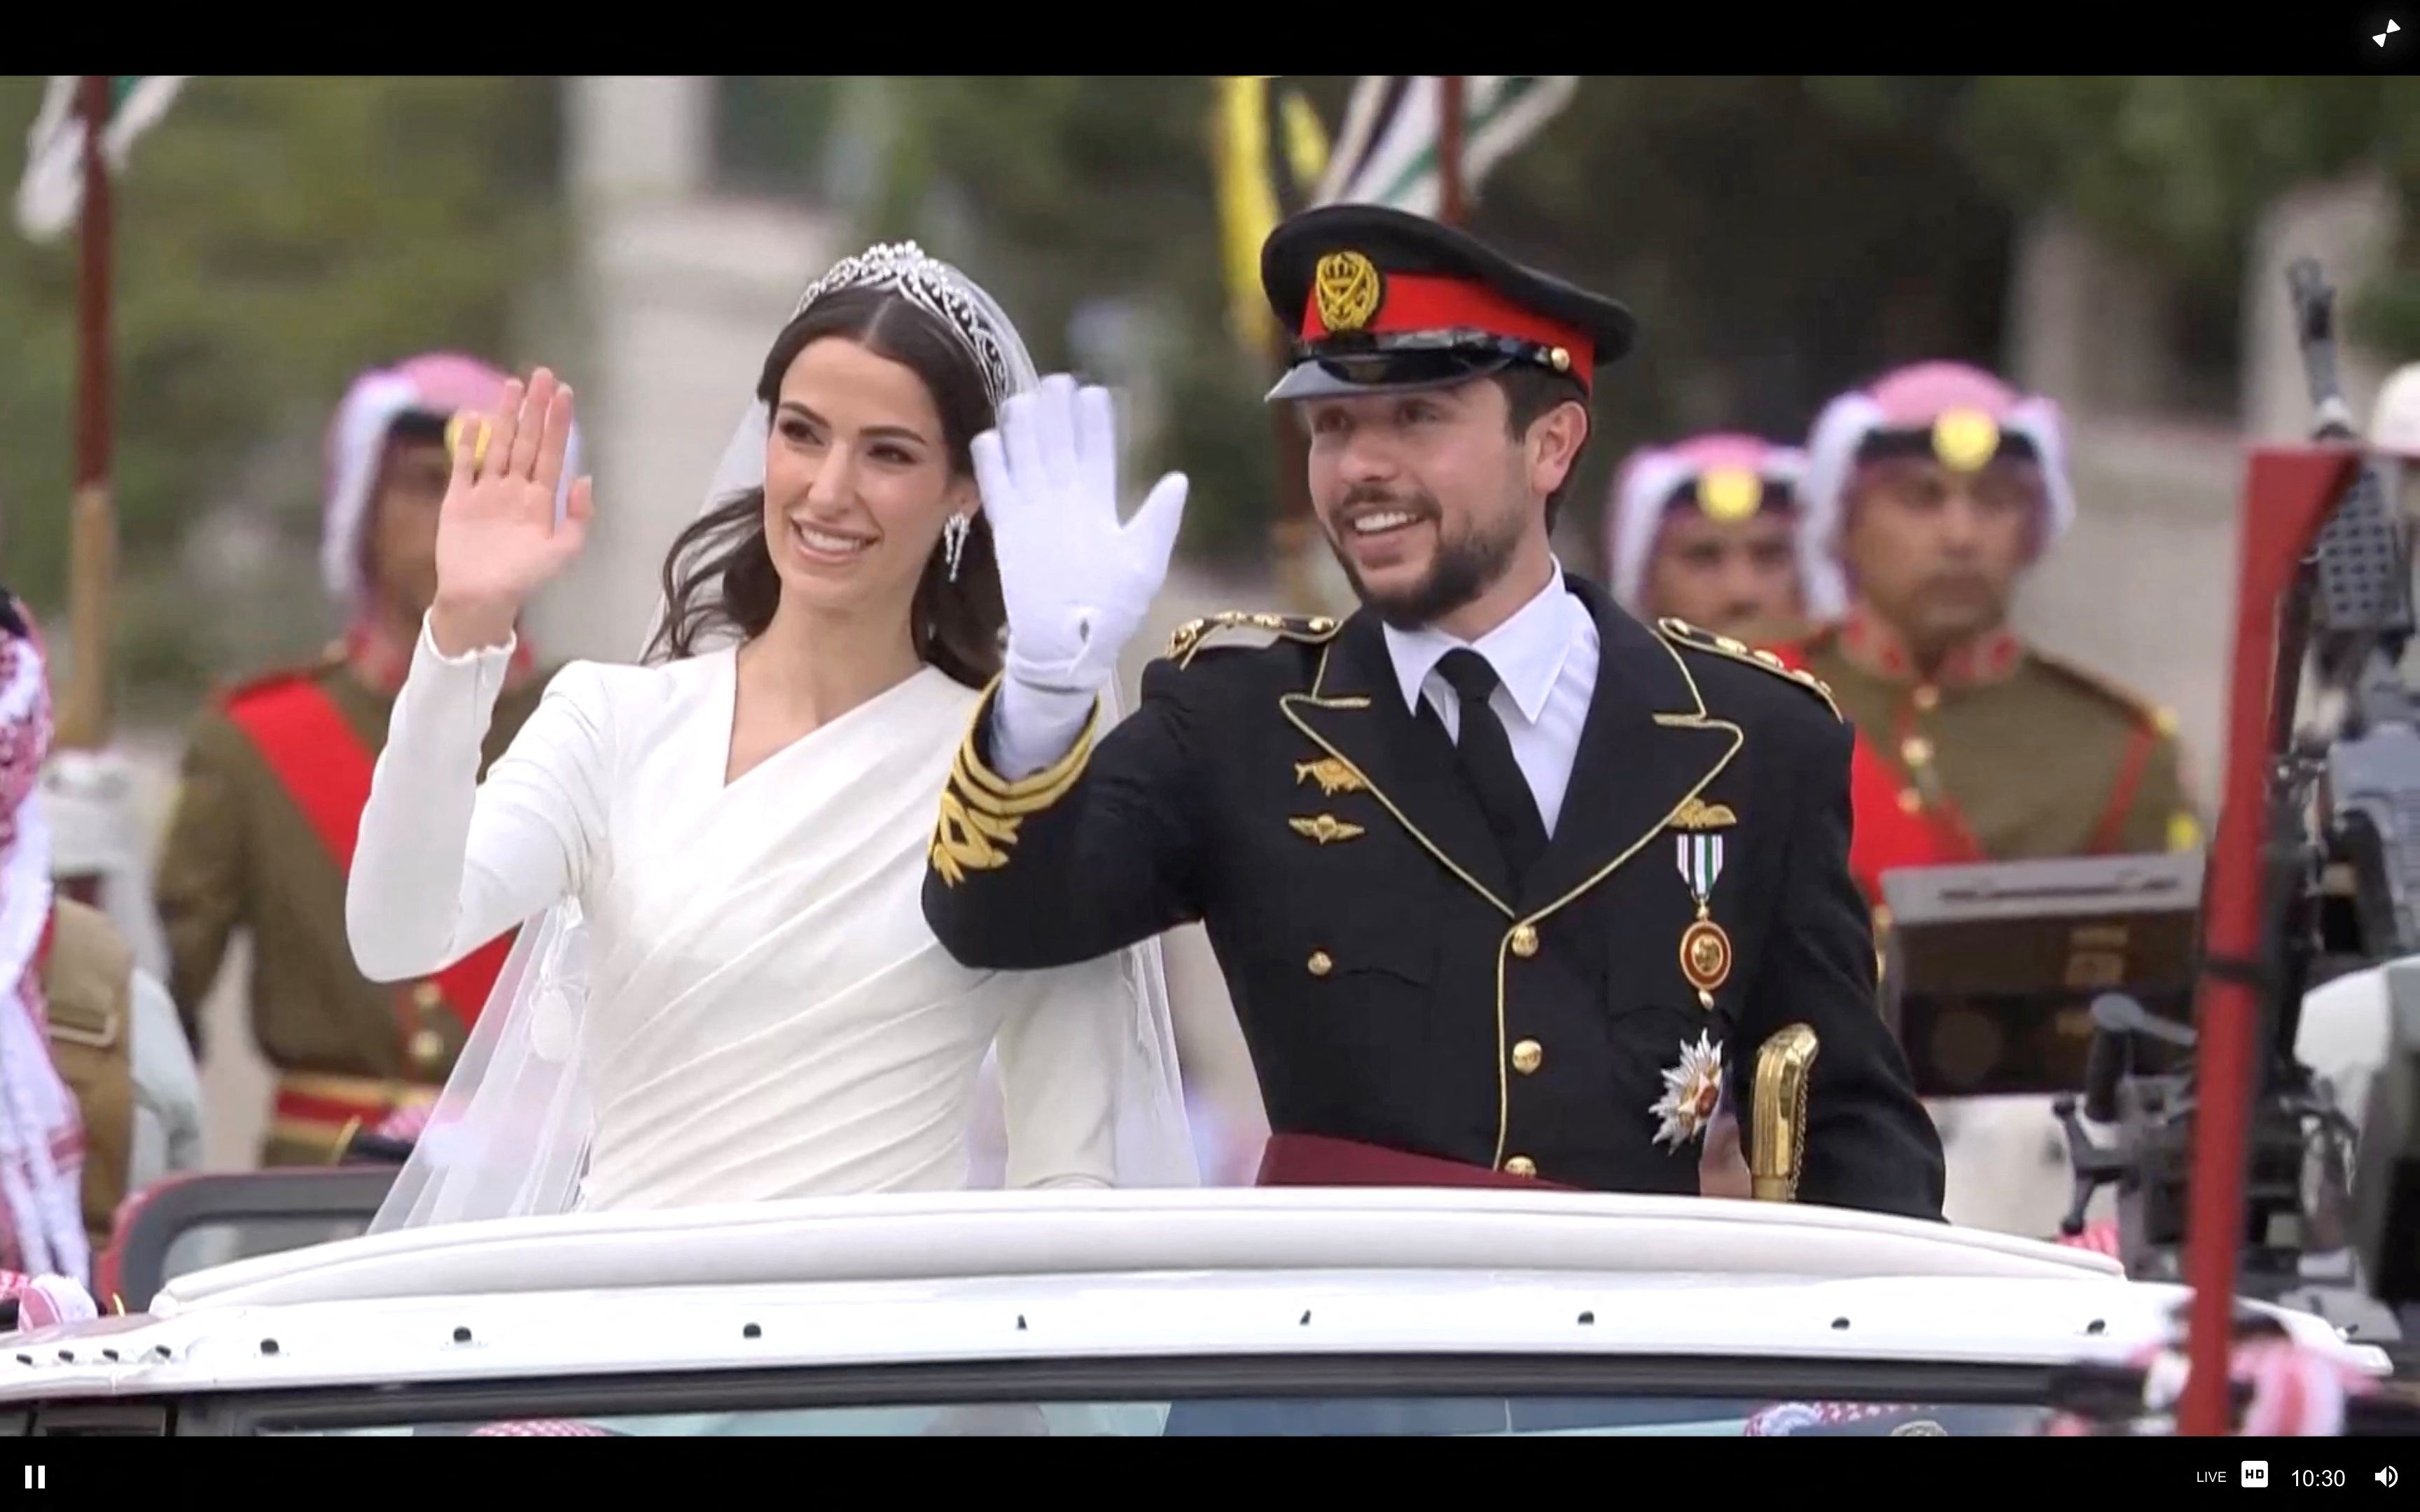 Аль бин аль хусейн. Принц Хуссейн Иордании. Наследный принц Иордании Хусейн Бин Абдалла. Свадьба принца Иордании Хусейна и раджвы Аль-Саиф.